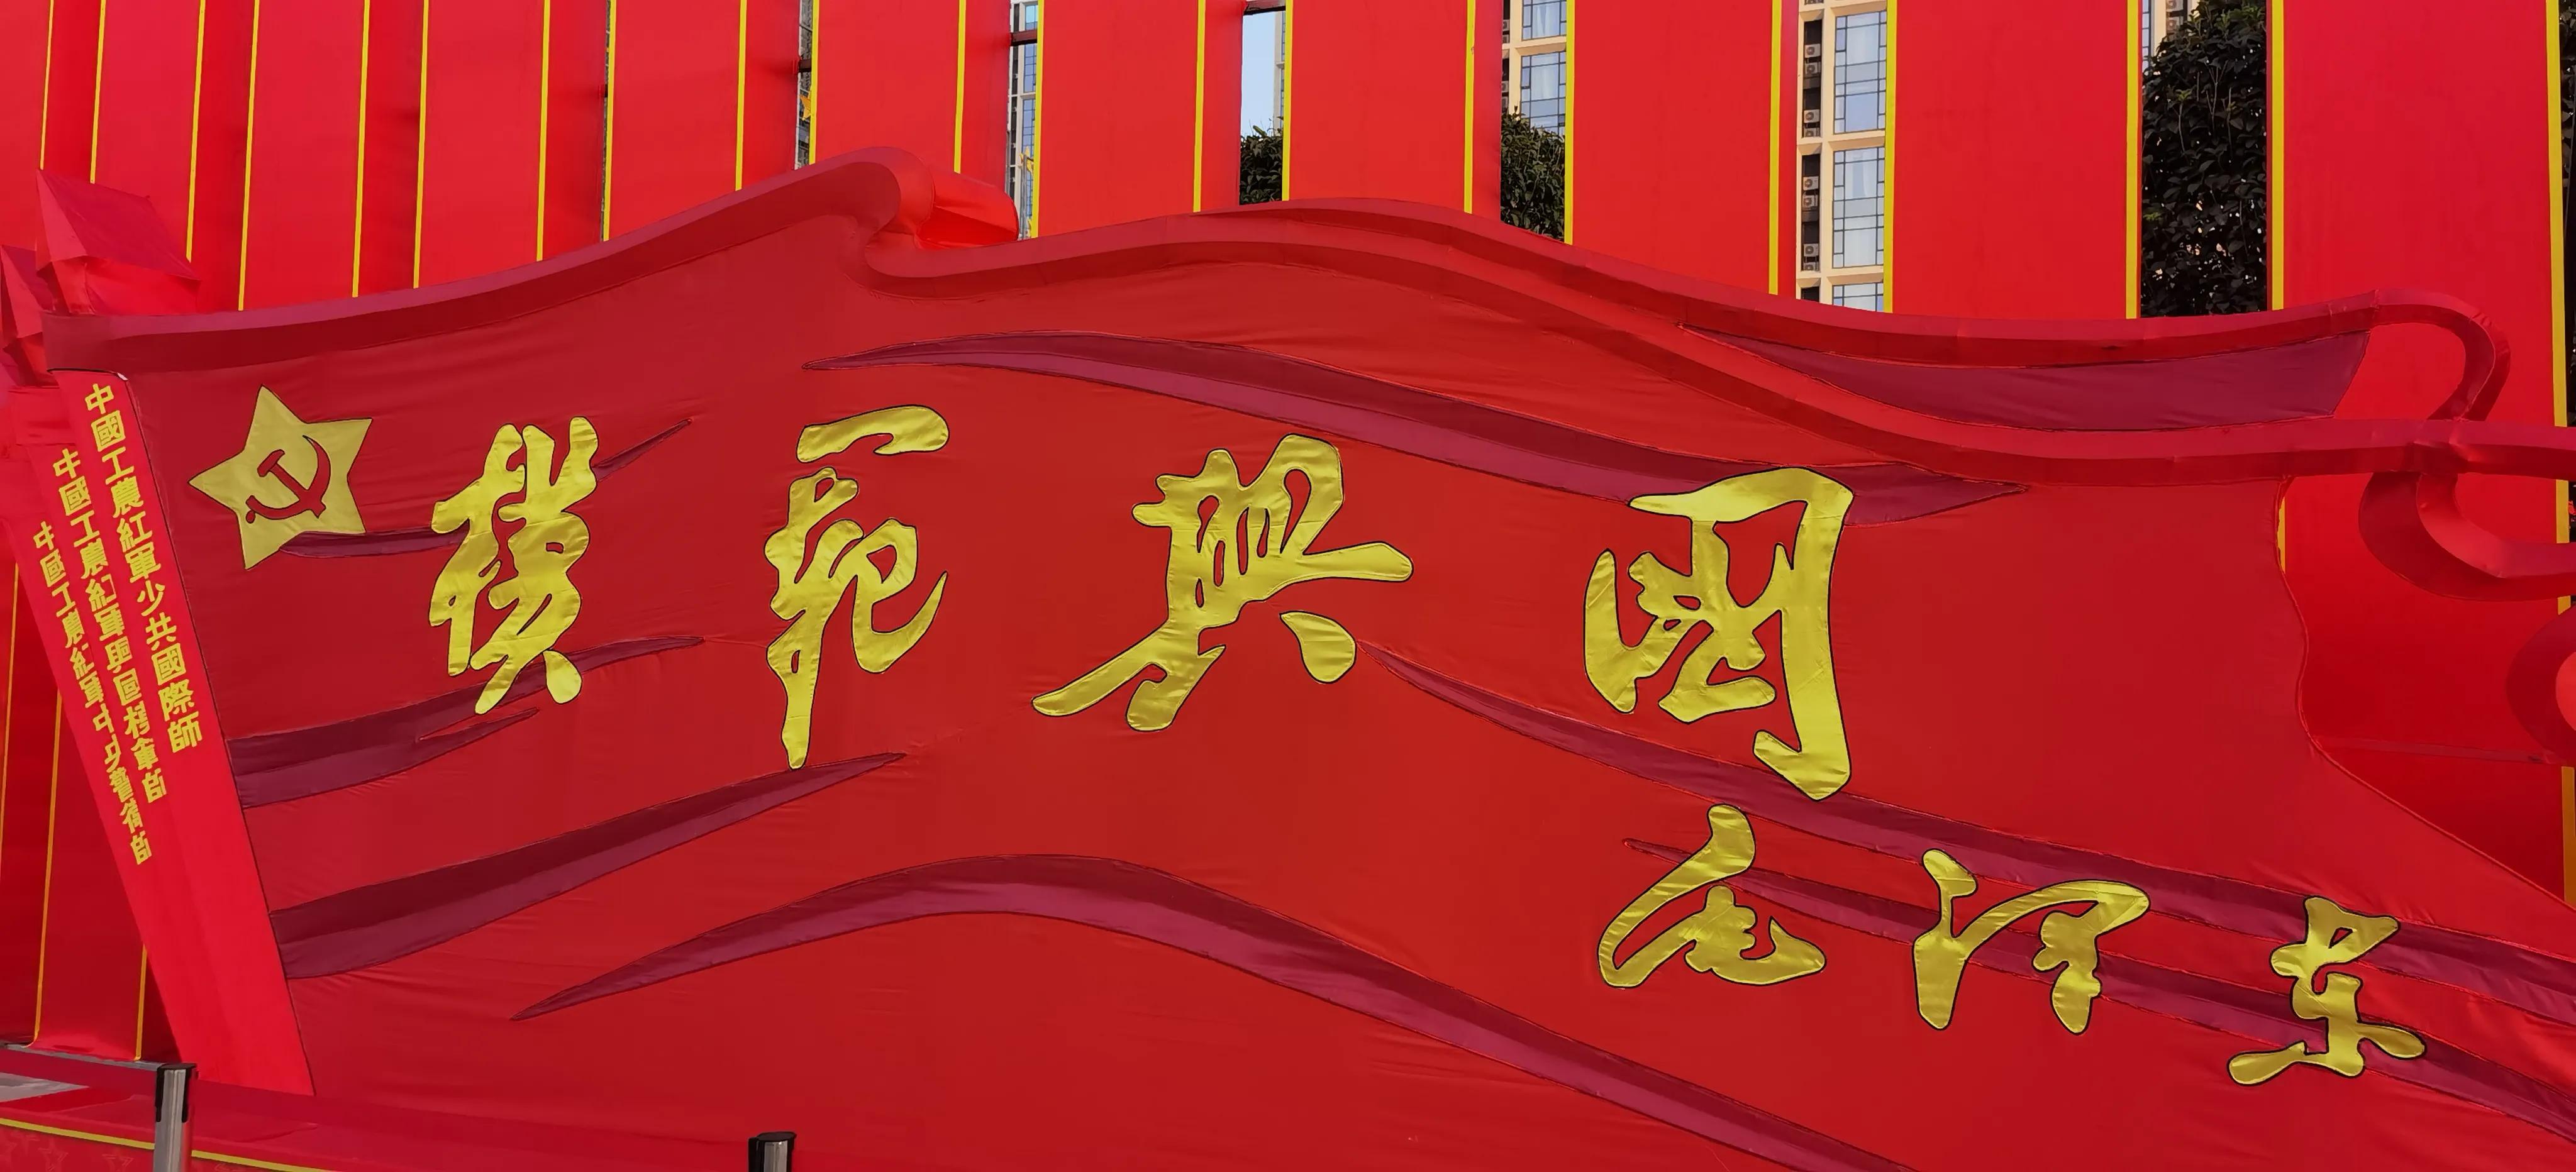 中国红的底色从赣南红土地铺就，“红色”，对赣南来说，不仅是一种底色，更代表着一种精神